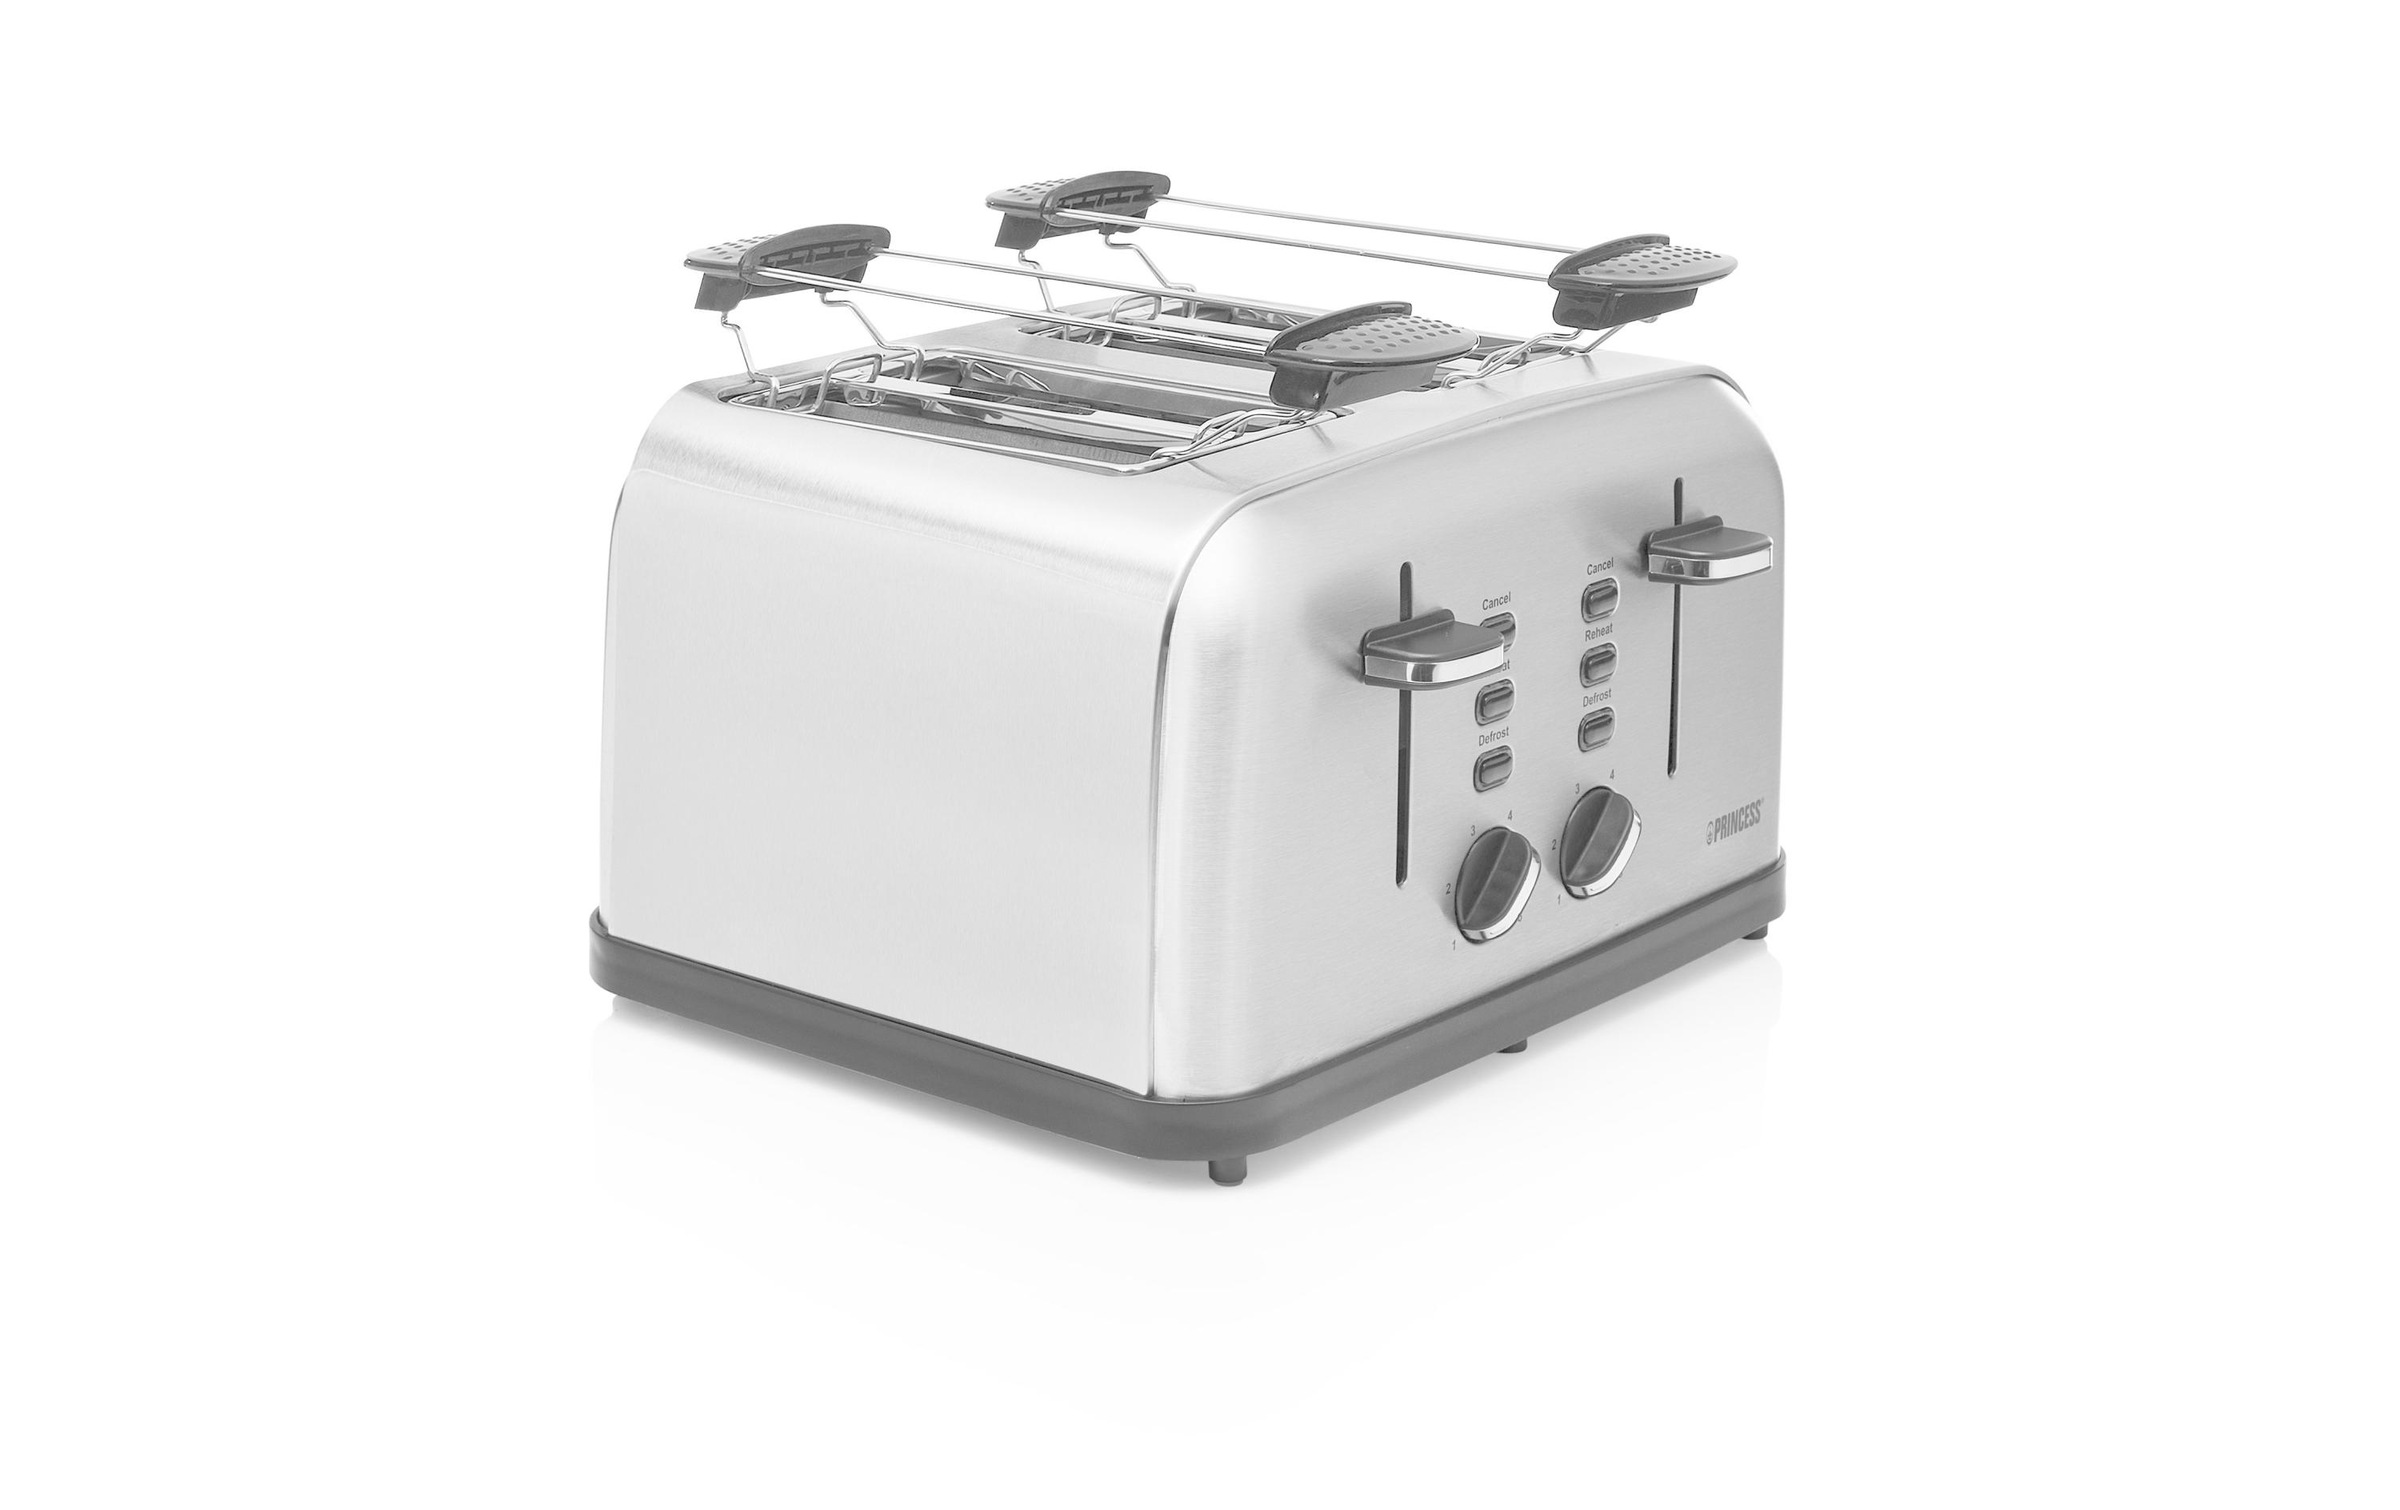 PRINCESS Toaster »142355 Style 4 aus Edelstahl, Silberfarben«, für 4 Scheiben, 1750 W